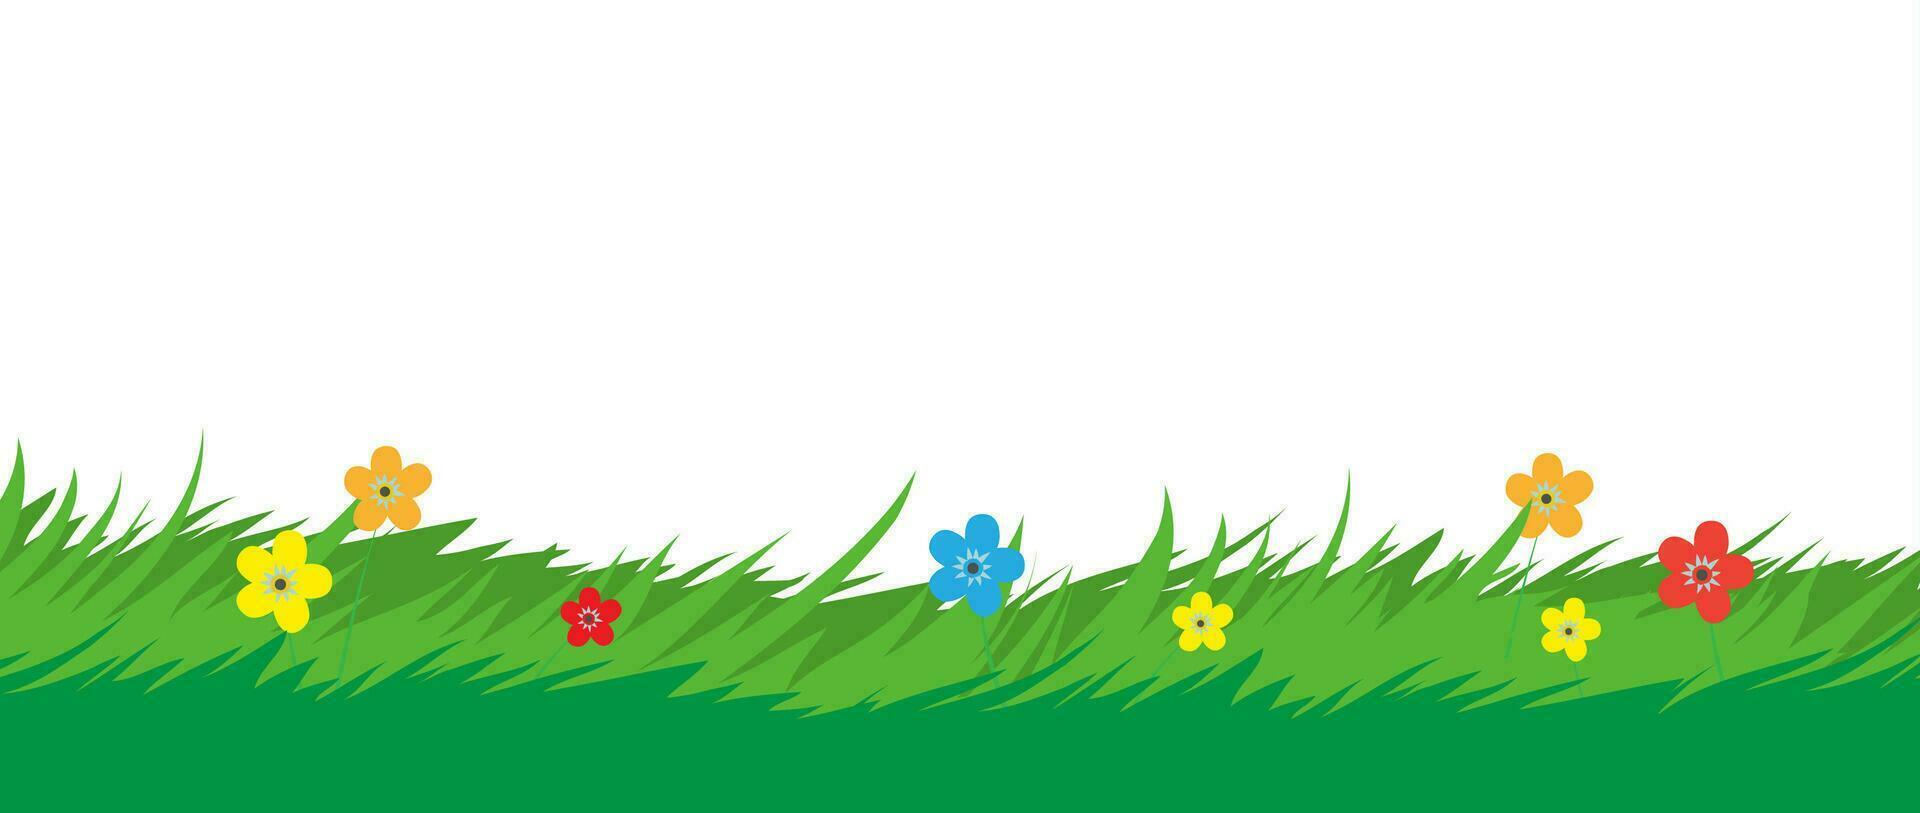 Natur Hintergrund. Gras Laub und Blumen Pflanzen. Park oder Garten Elemente. Vektor Illustration im eben Stil